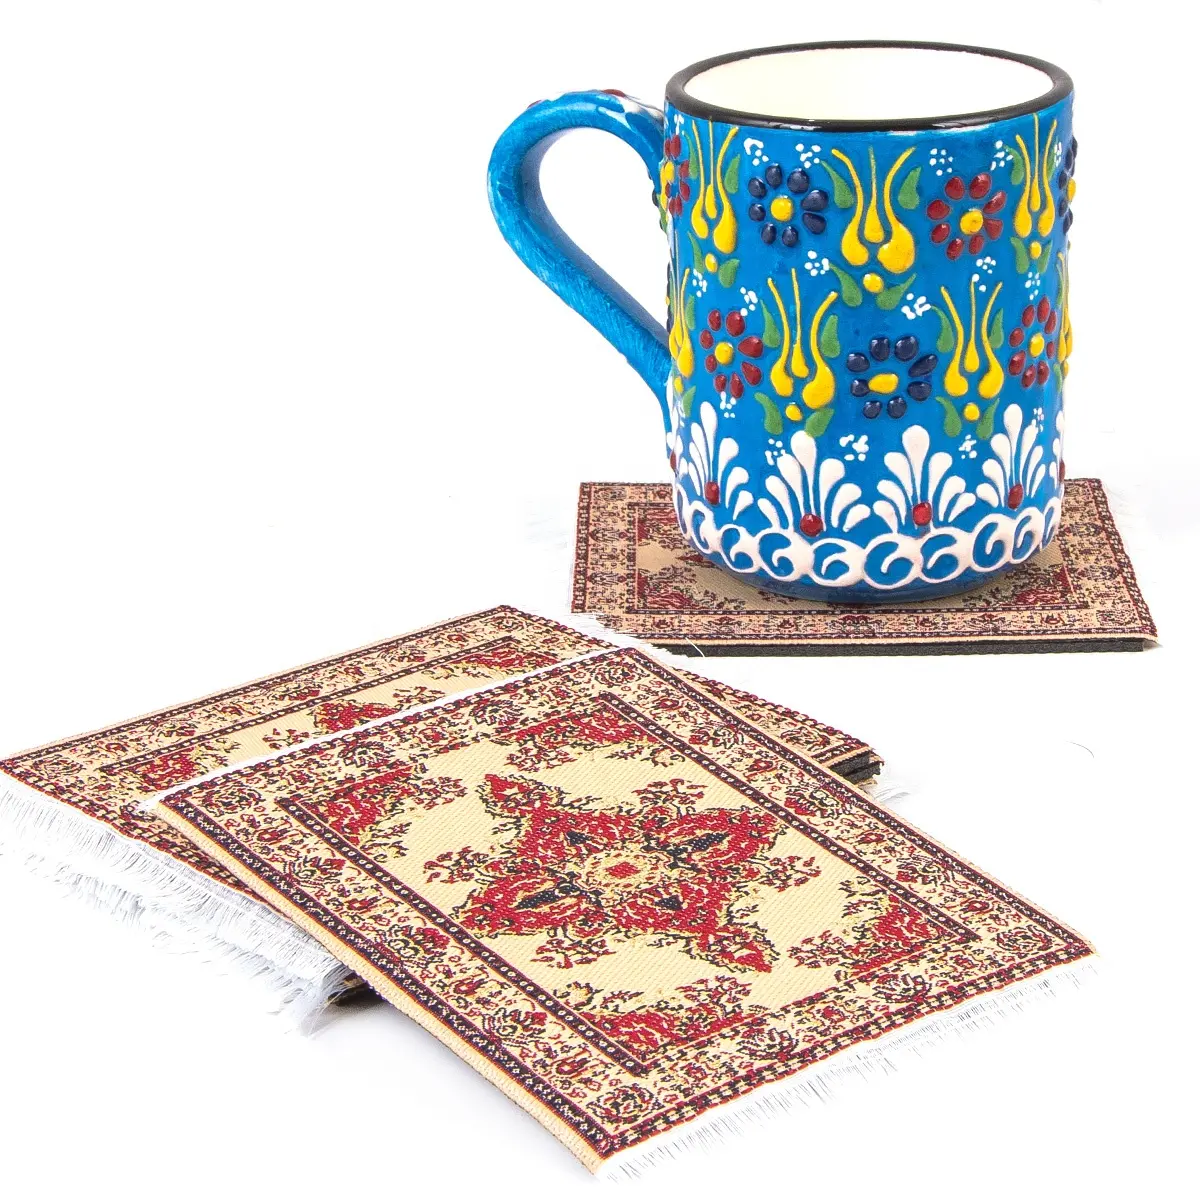 Türk minyatür halı dokuma 6 Set çay kahve altlığı Mat masa dekorasyon